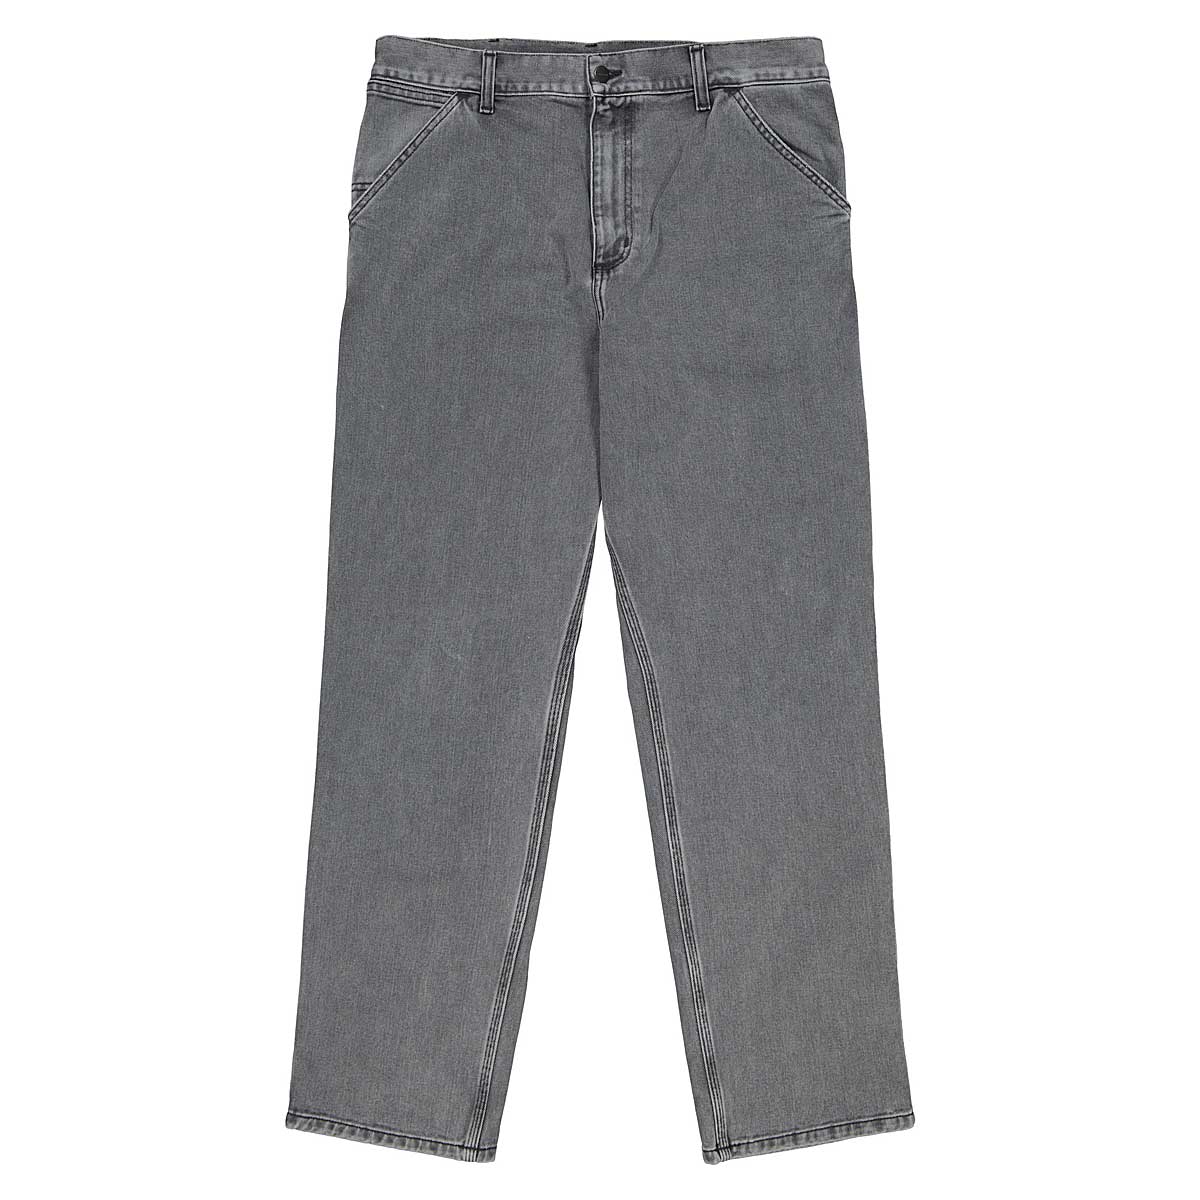 Carhartt Wip Single Pants, Noir Faded 36/32